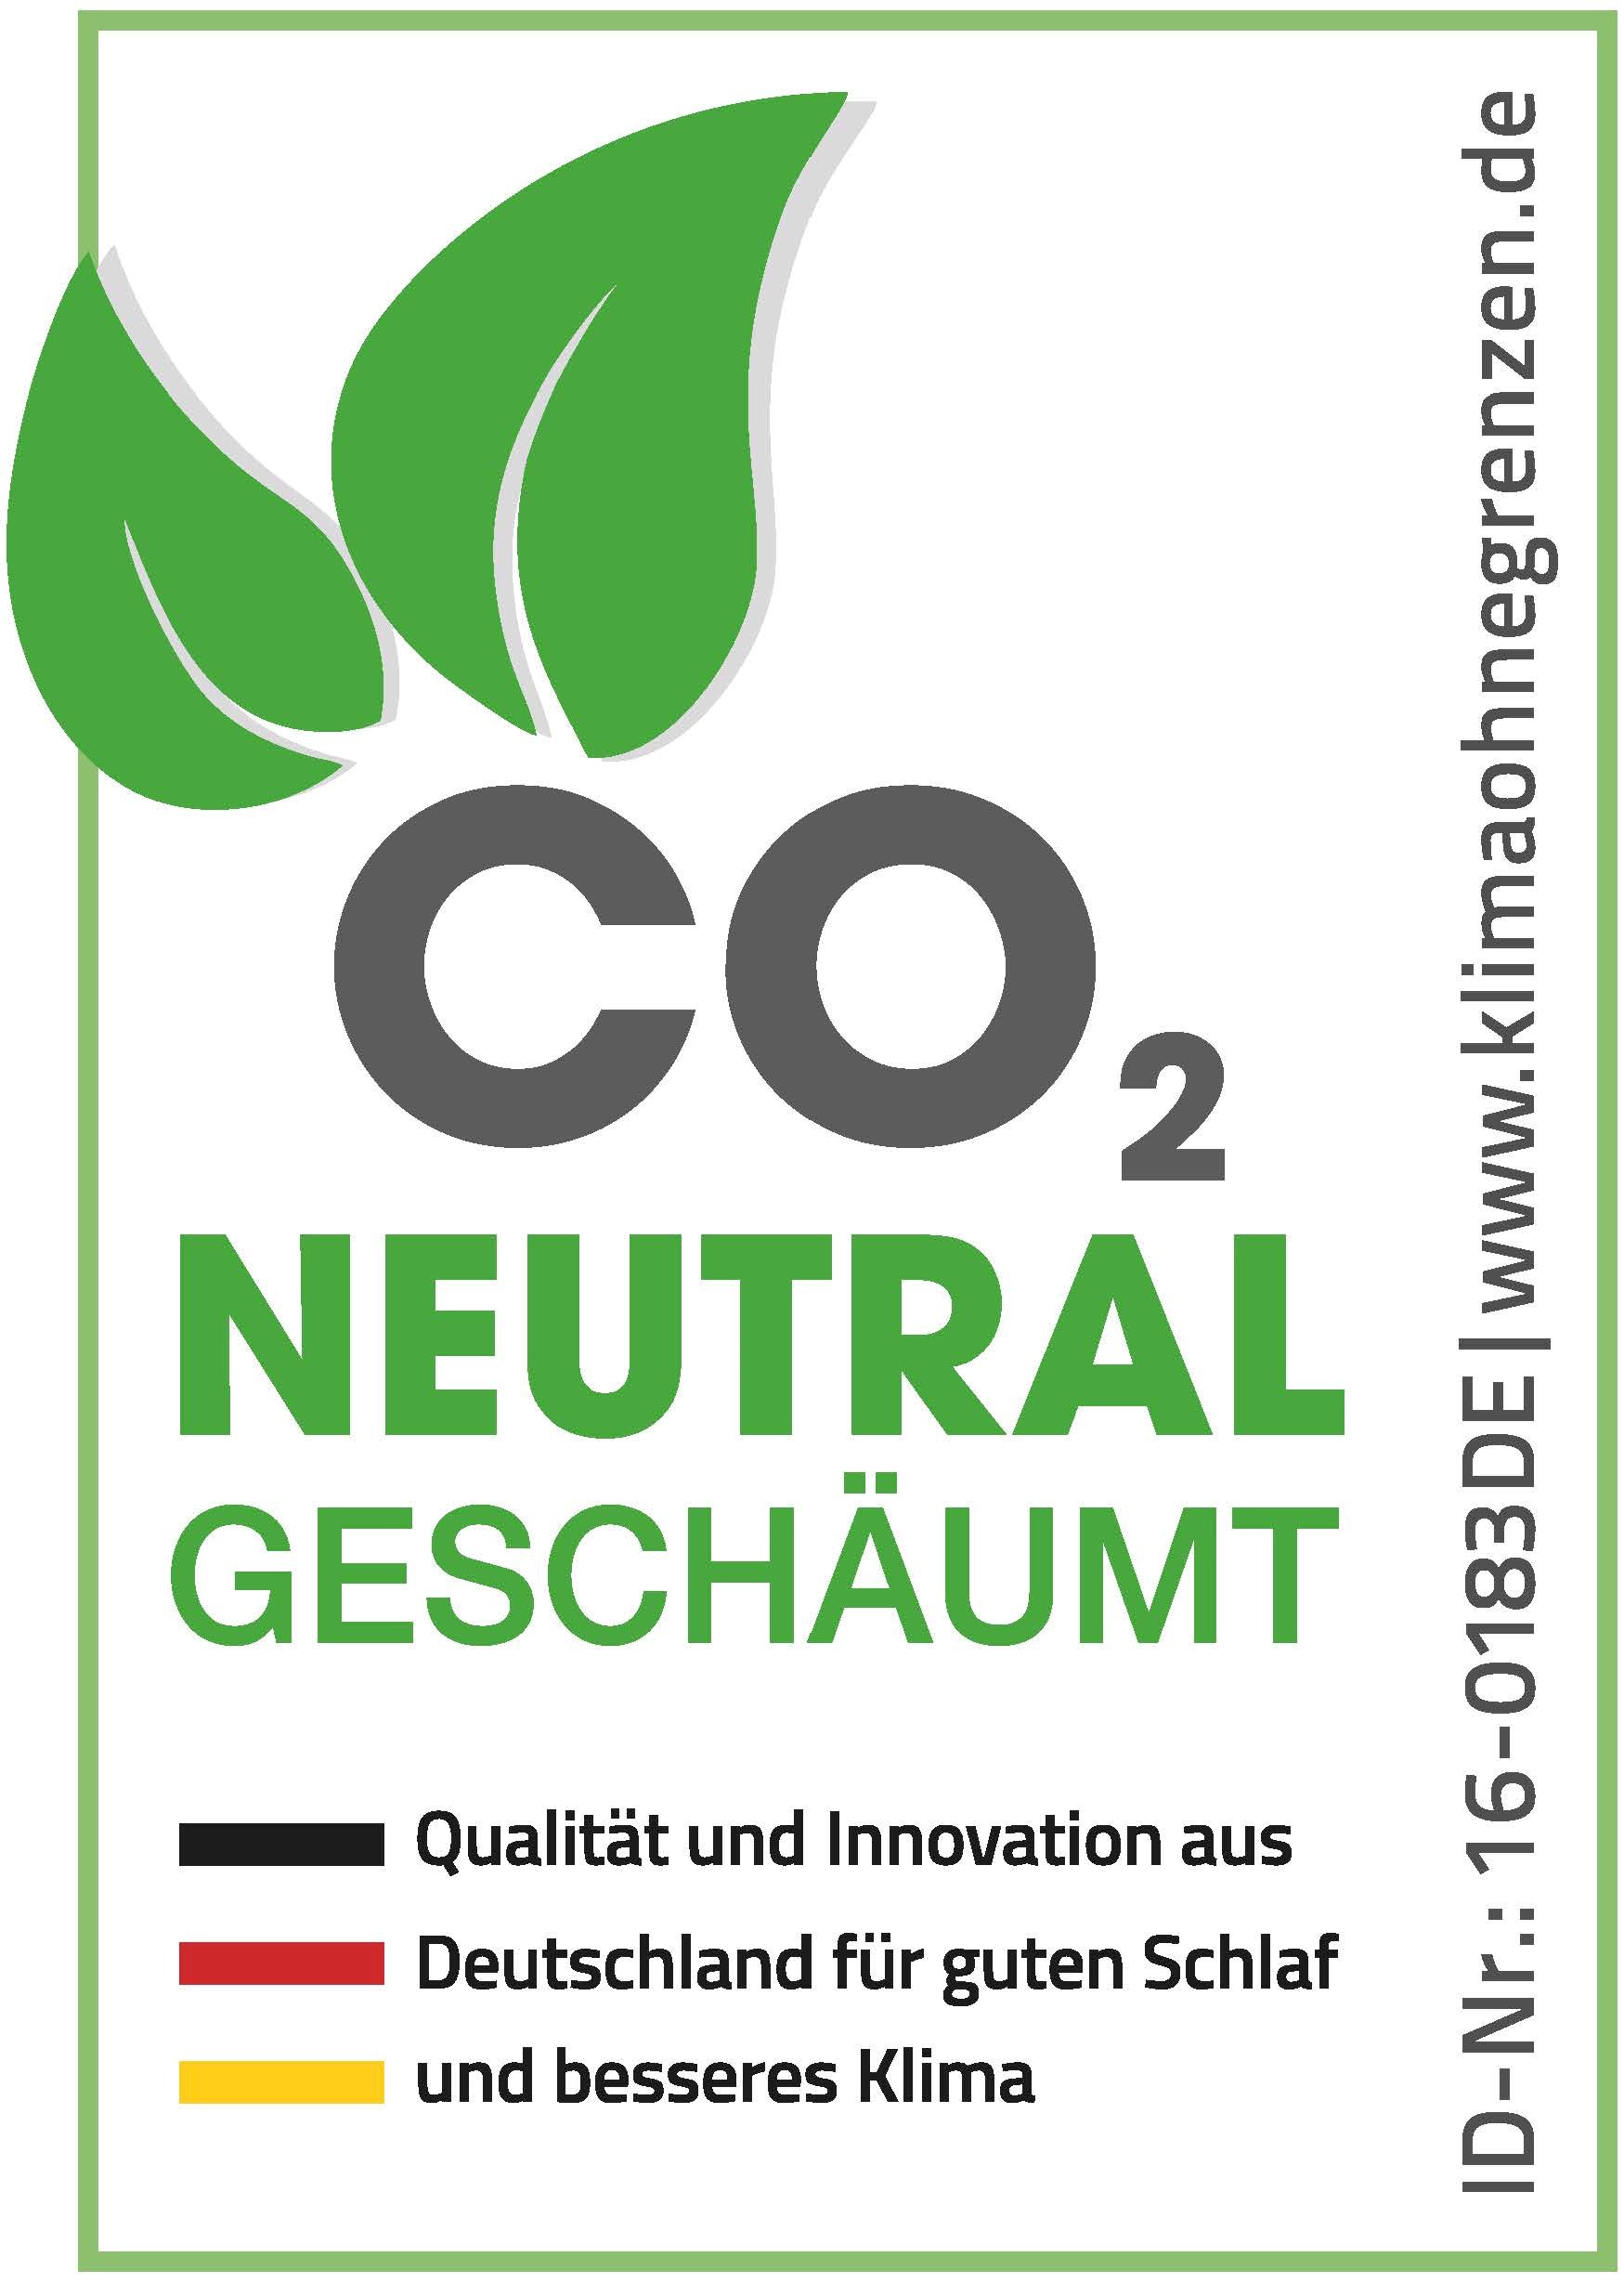 Logo CO2 neutral geschäumt